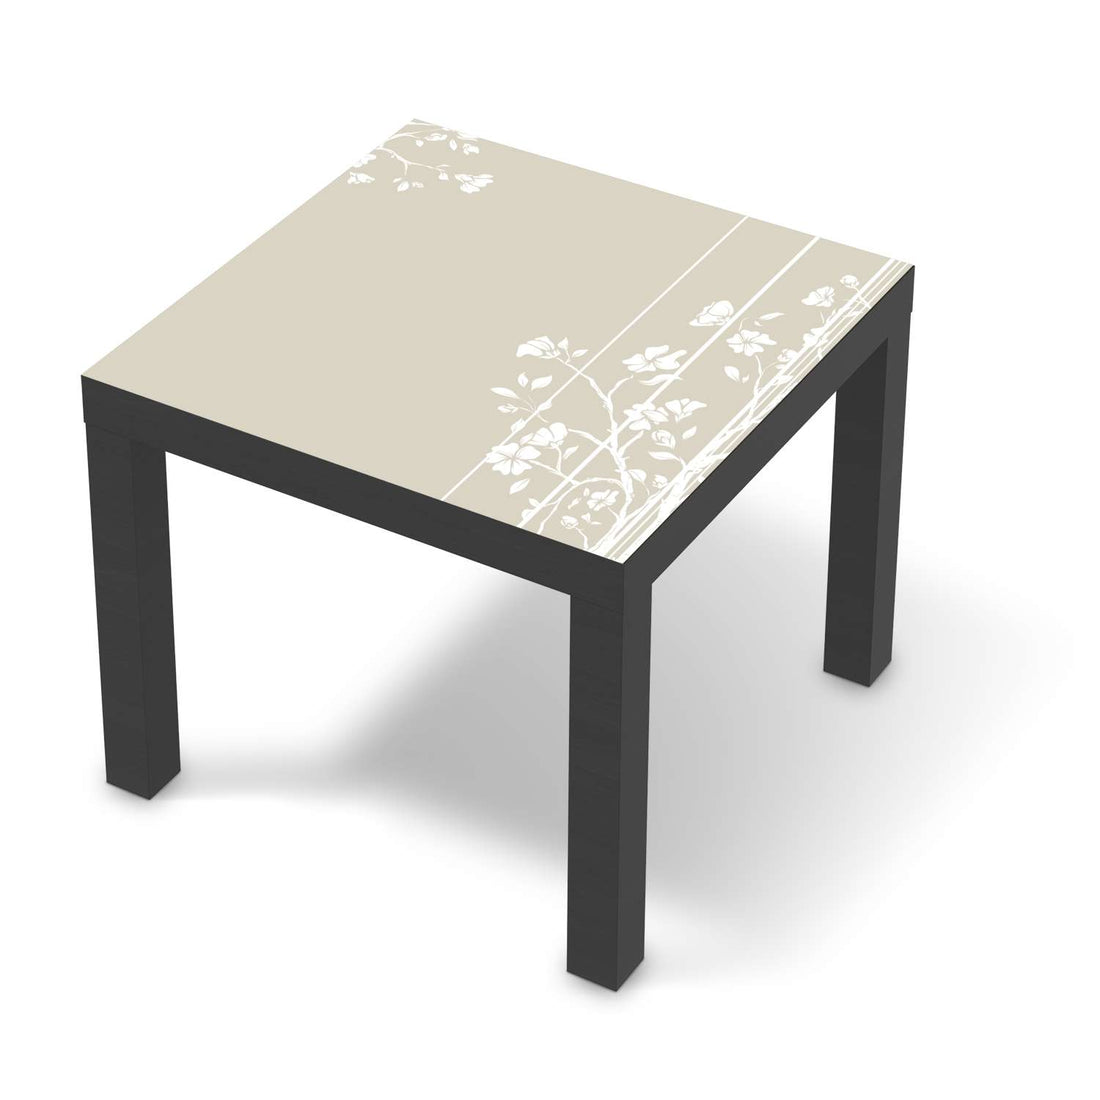 Möbelfolie Florals Plain 3 - IKEA Lack Tisch 55x55 cm - schwarz